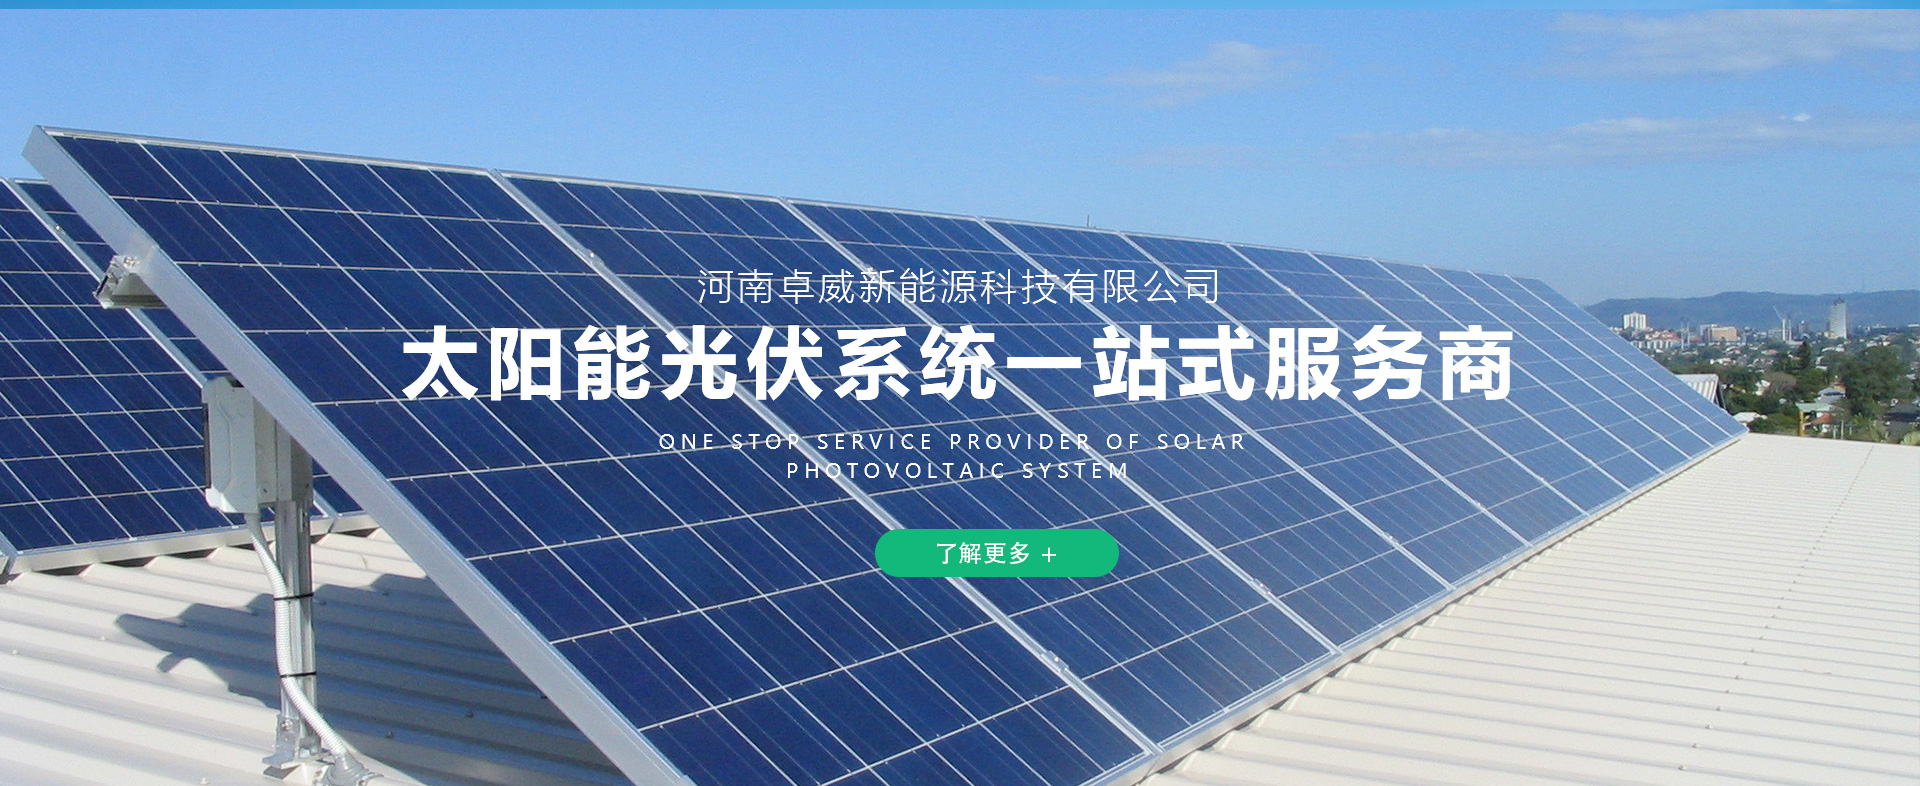 河南卓威新能源科技有限公司